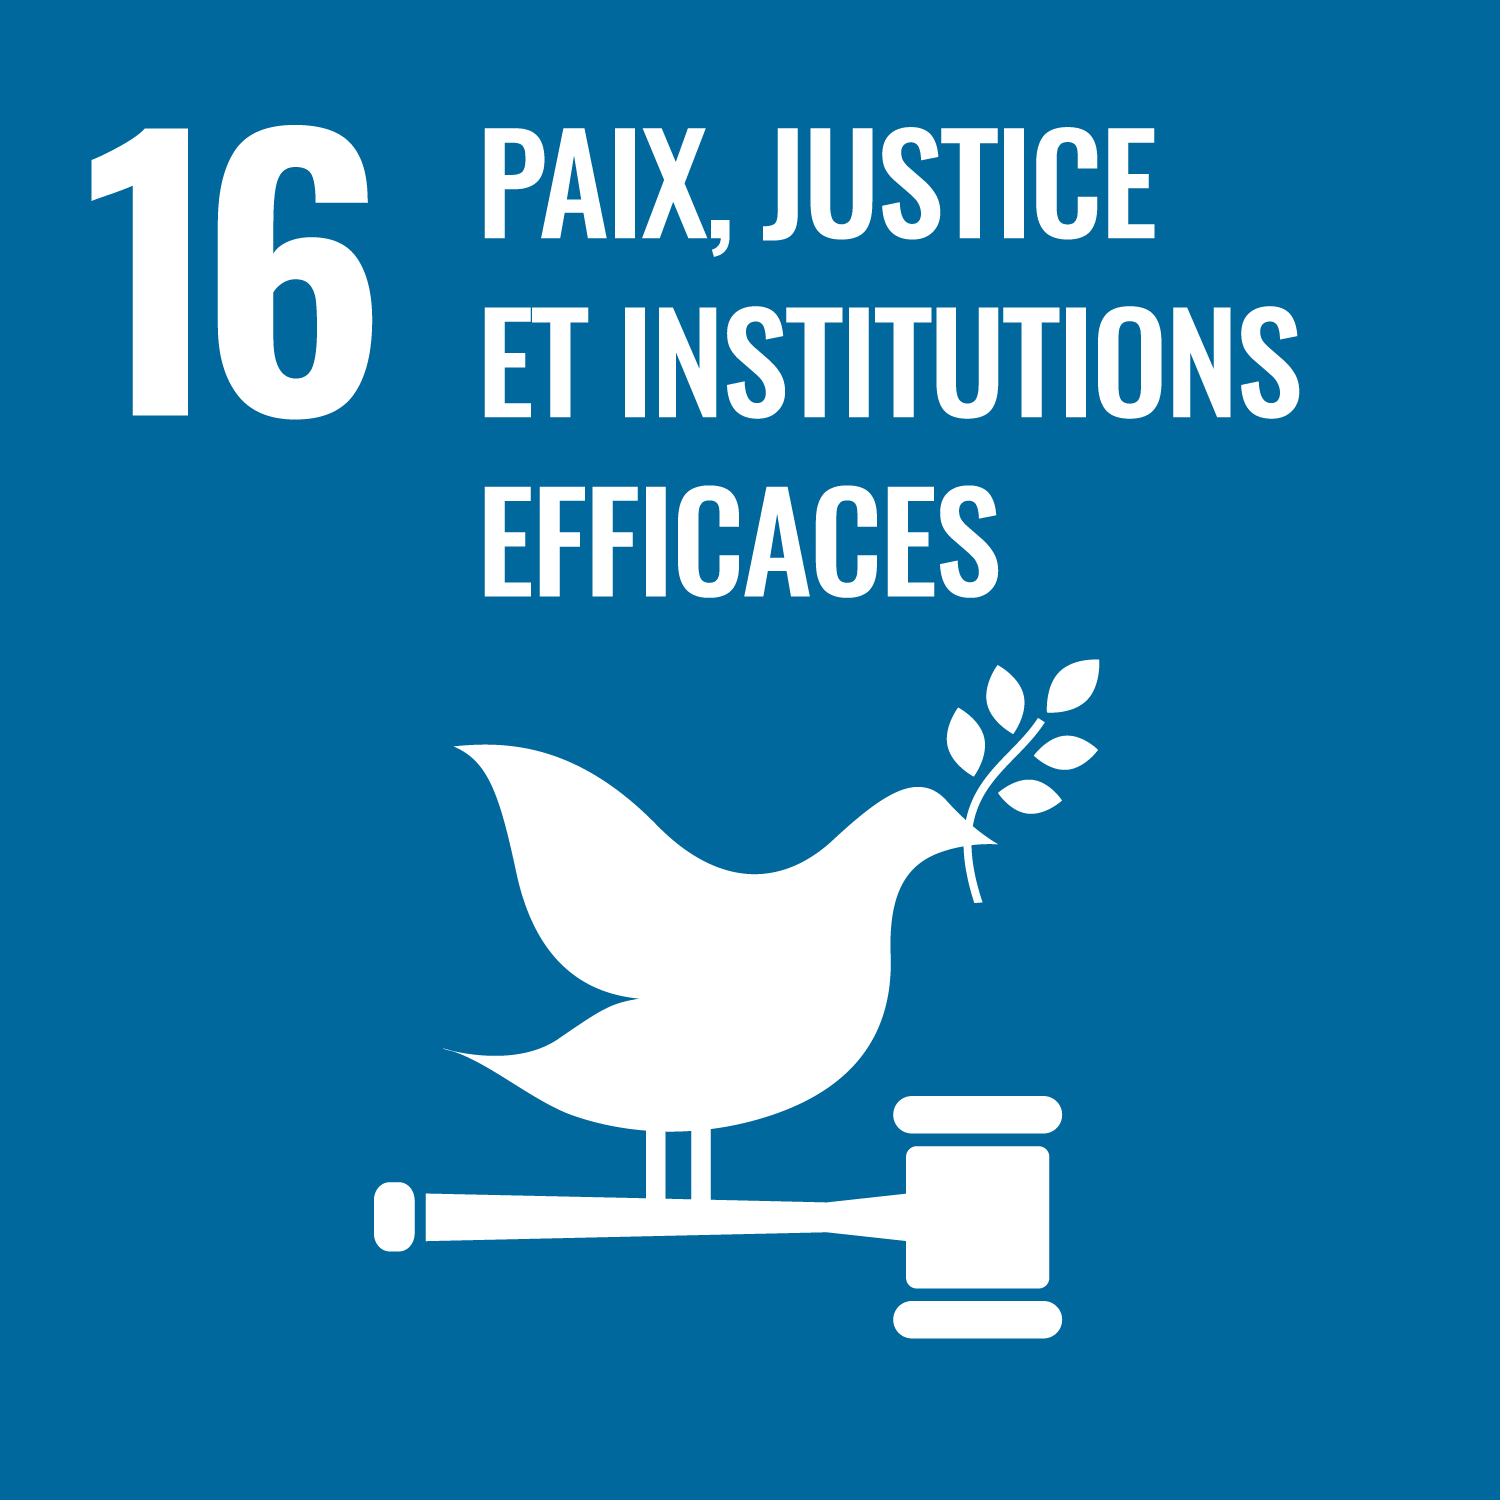 Objectif de Développement Durable de l'O.N.U. 16 : paix, justice et institutions efficaces